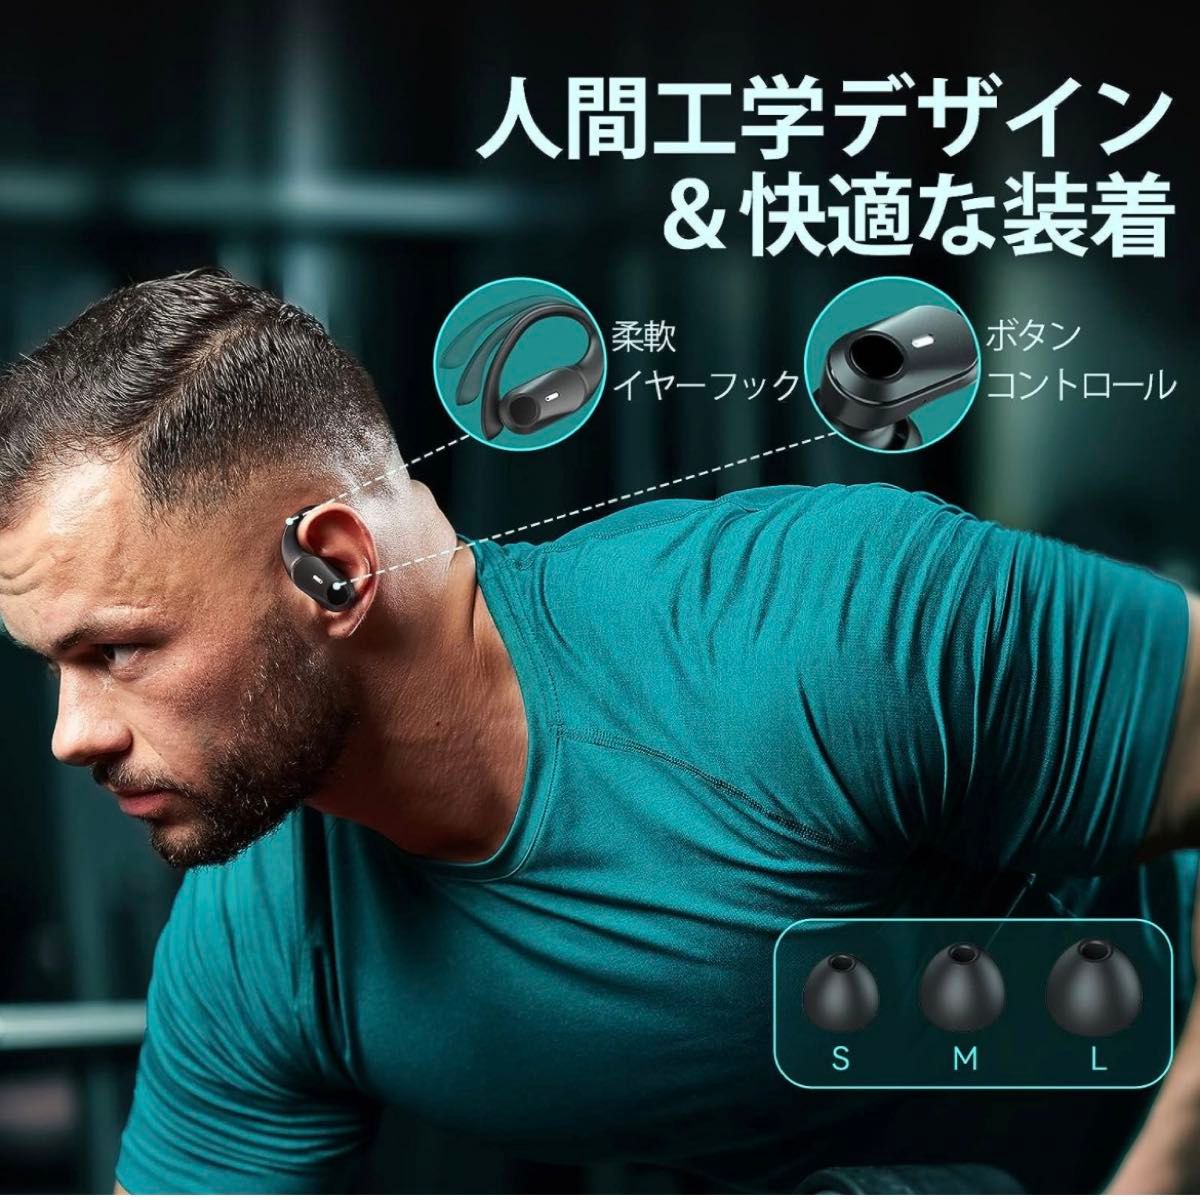 耳掛け式イヤホン ワイヤレス Bluetooth5.3 Hi-Fi音質 AAC対応 LED 黒 快適装着感 IPX7防水 スポーツ